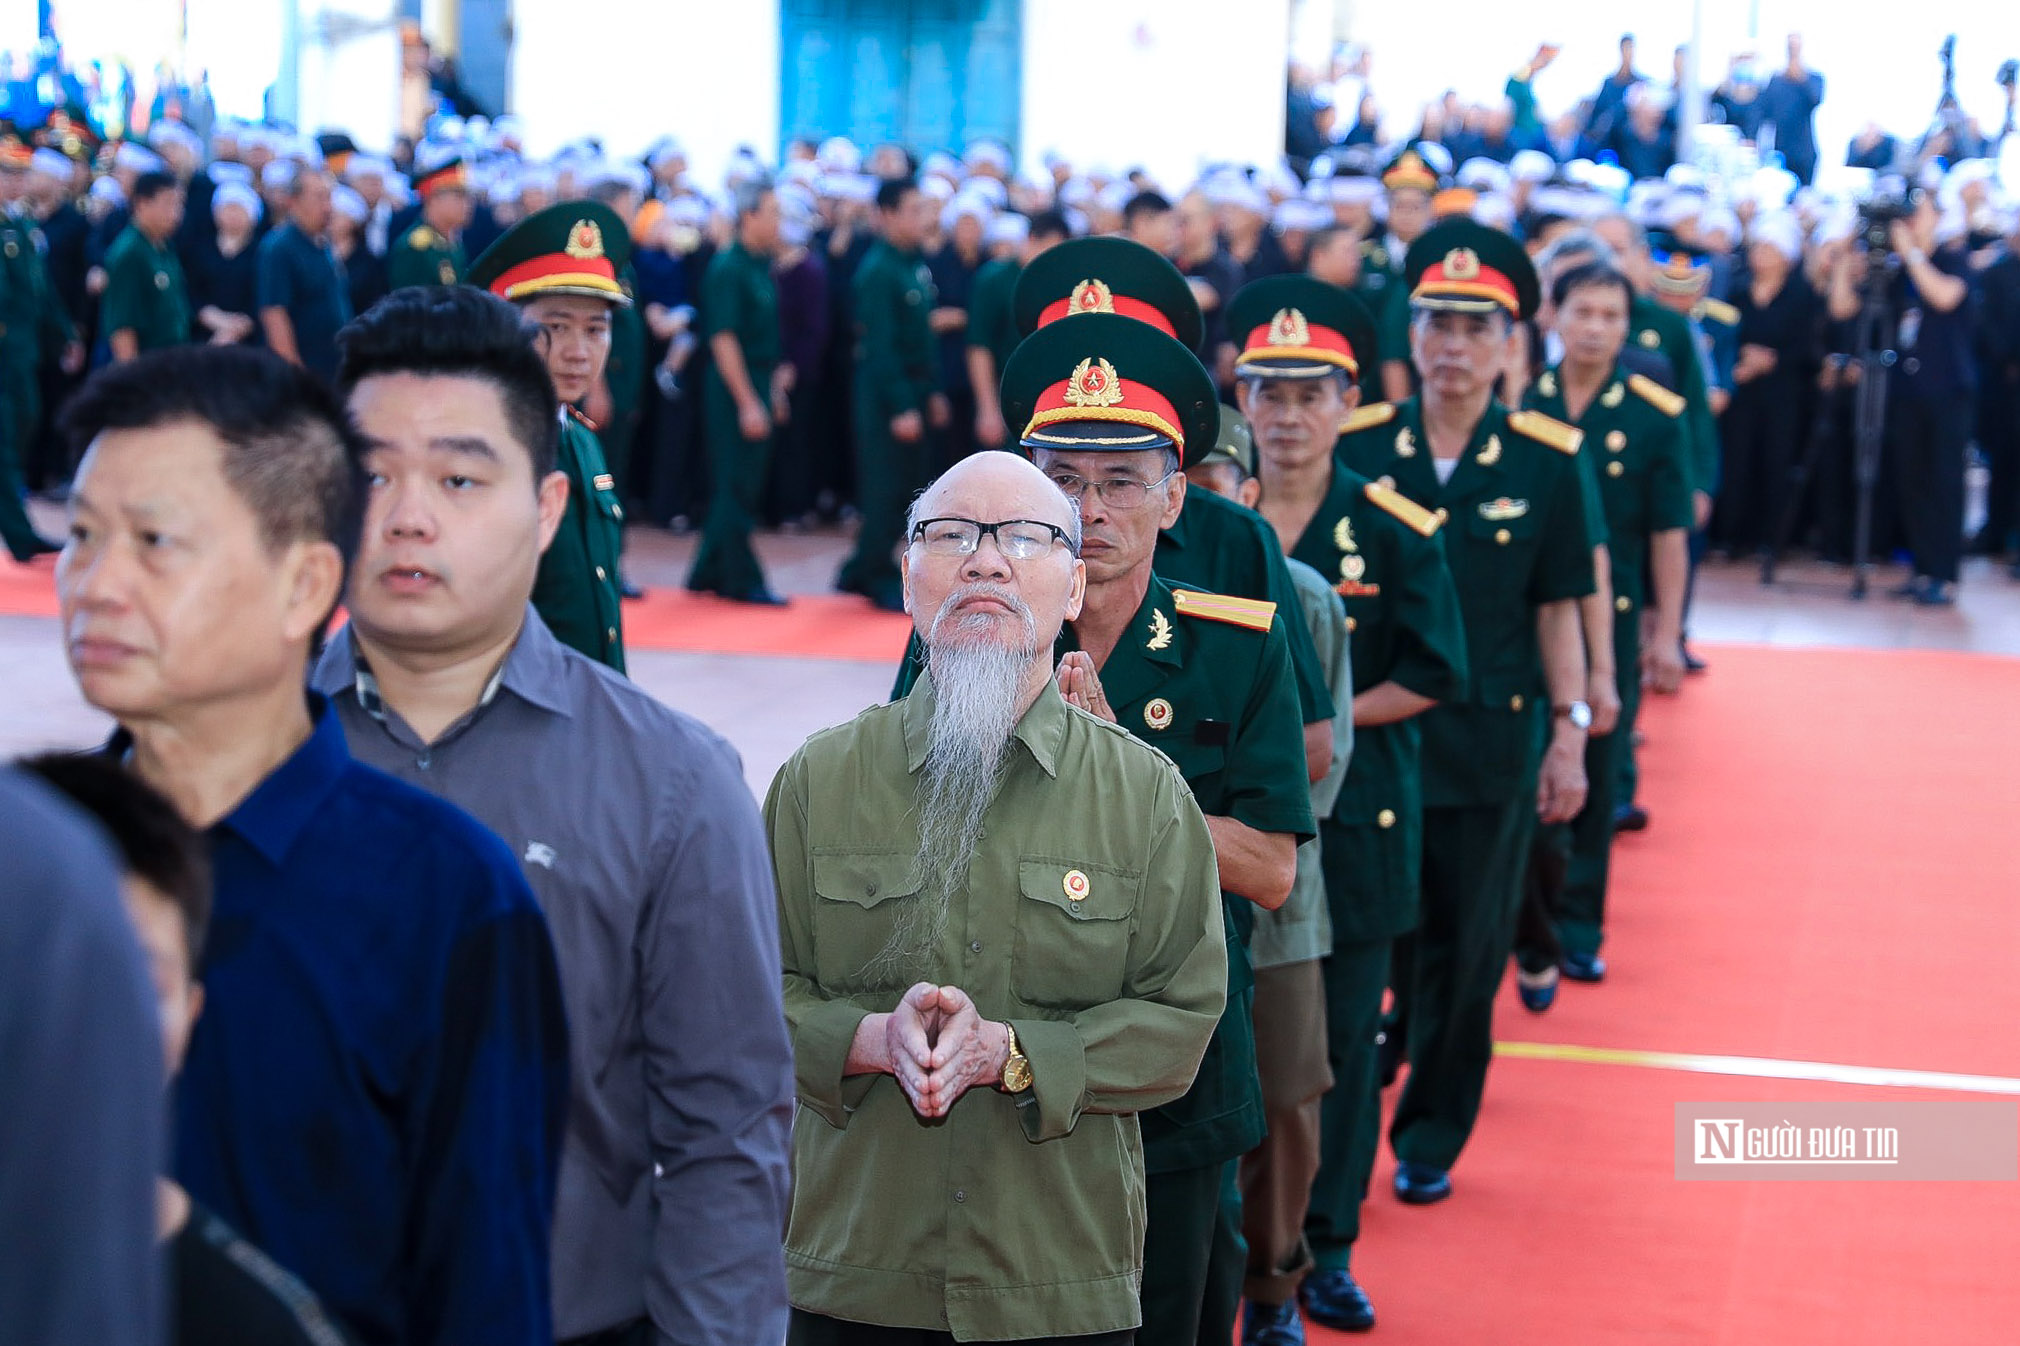 Hàng ngàn người tới viếng Tổng Bí thư Nguyễn Phú Trọng tại quê nhà- Ảnh 7.